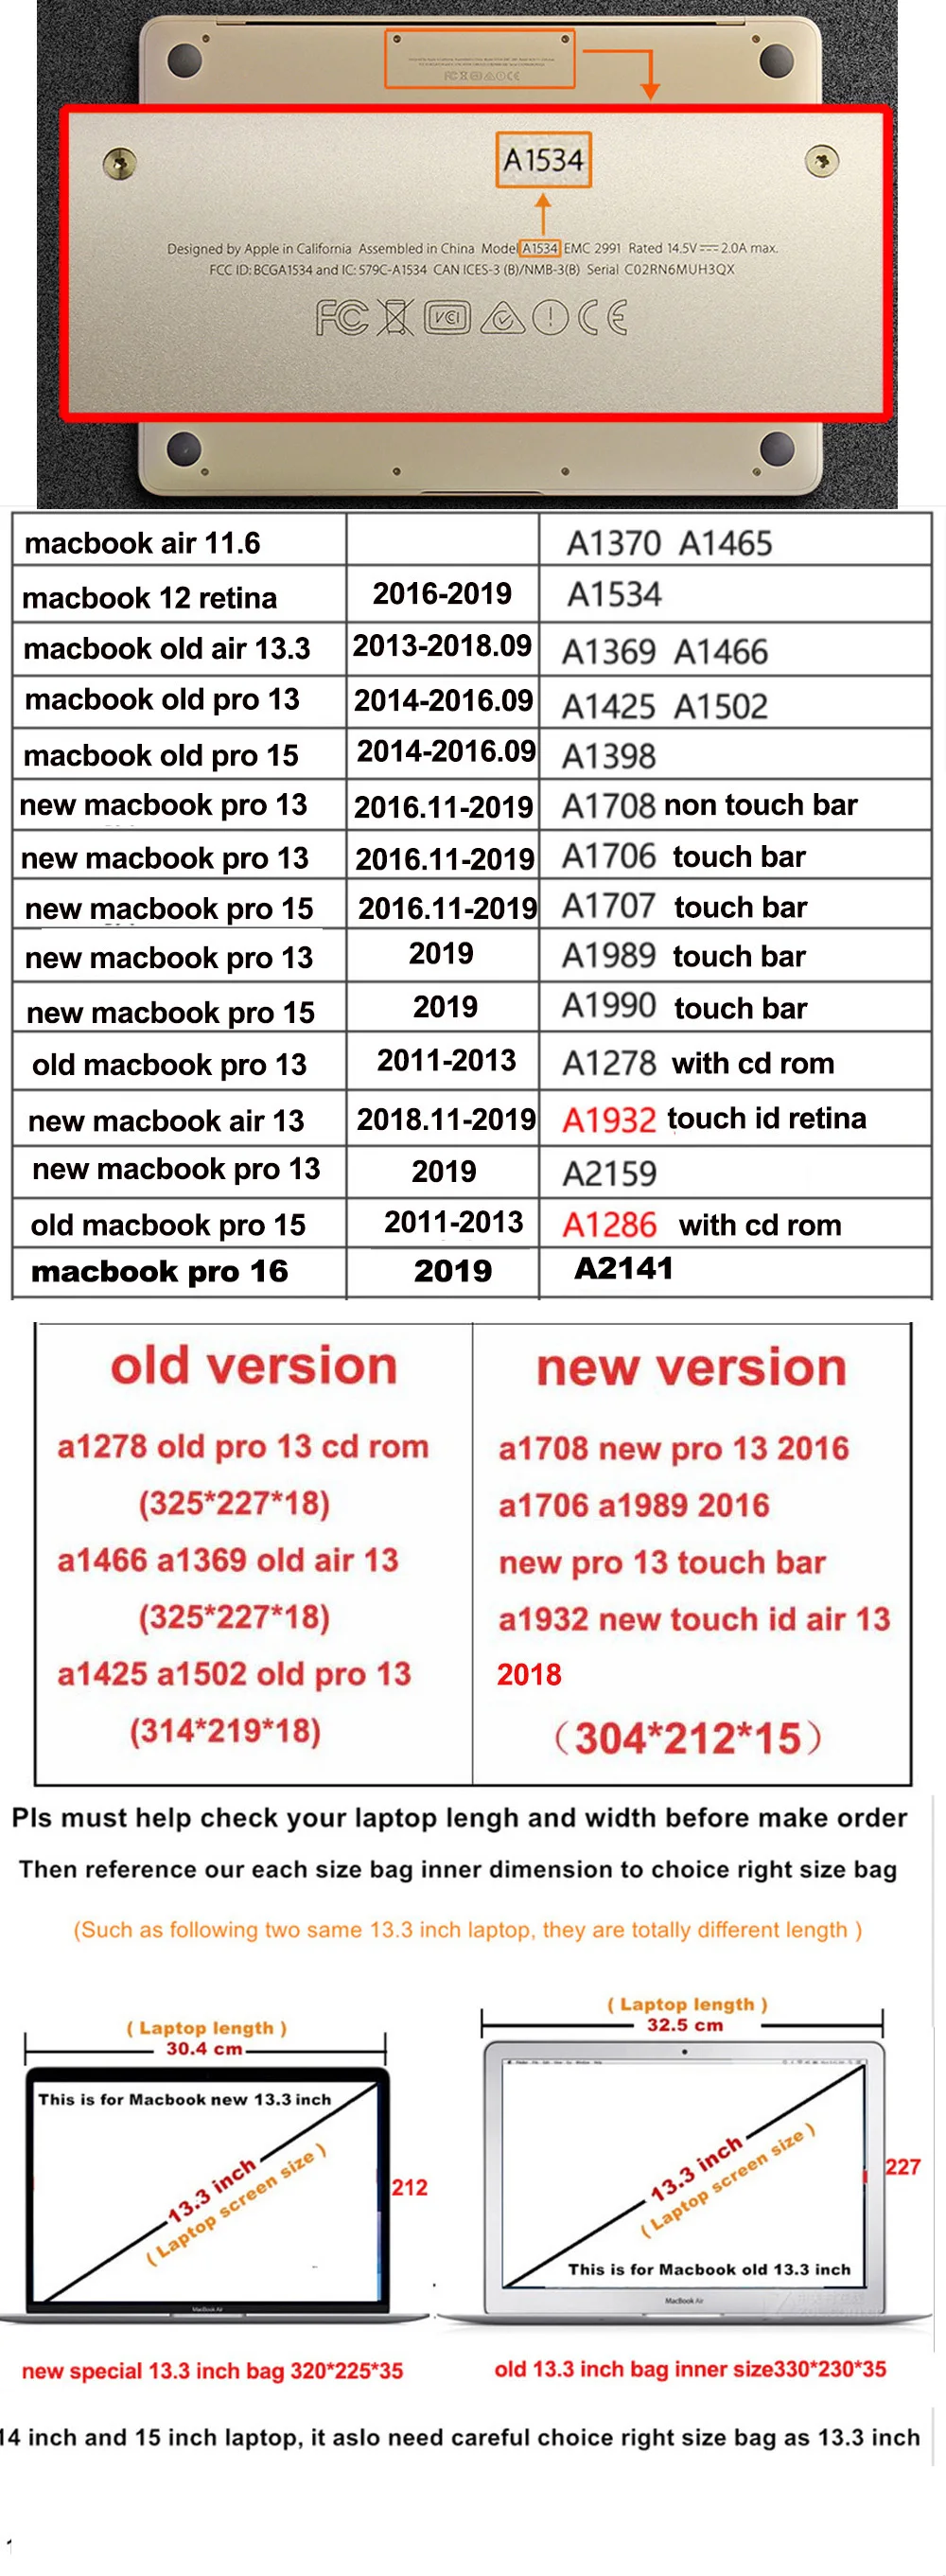 Чехол с принтом для ноутбука Apple MacBook Air Pro retina 11 12 13 15 16, чехол для Mac 11,6 13,3 15,4, чехол с сенсорной панелью